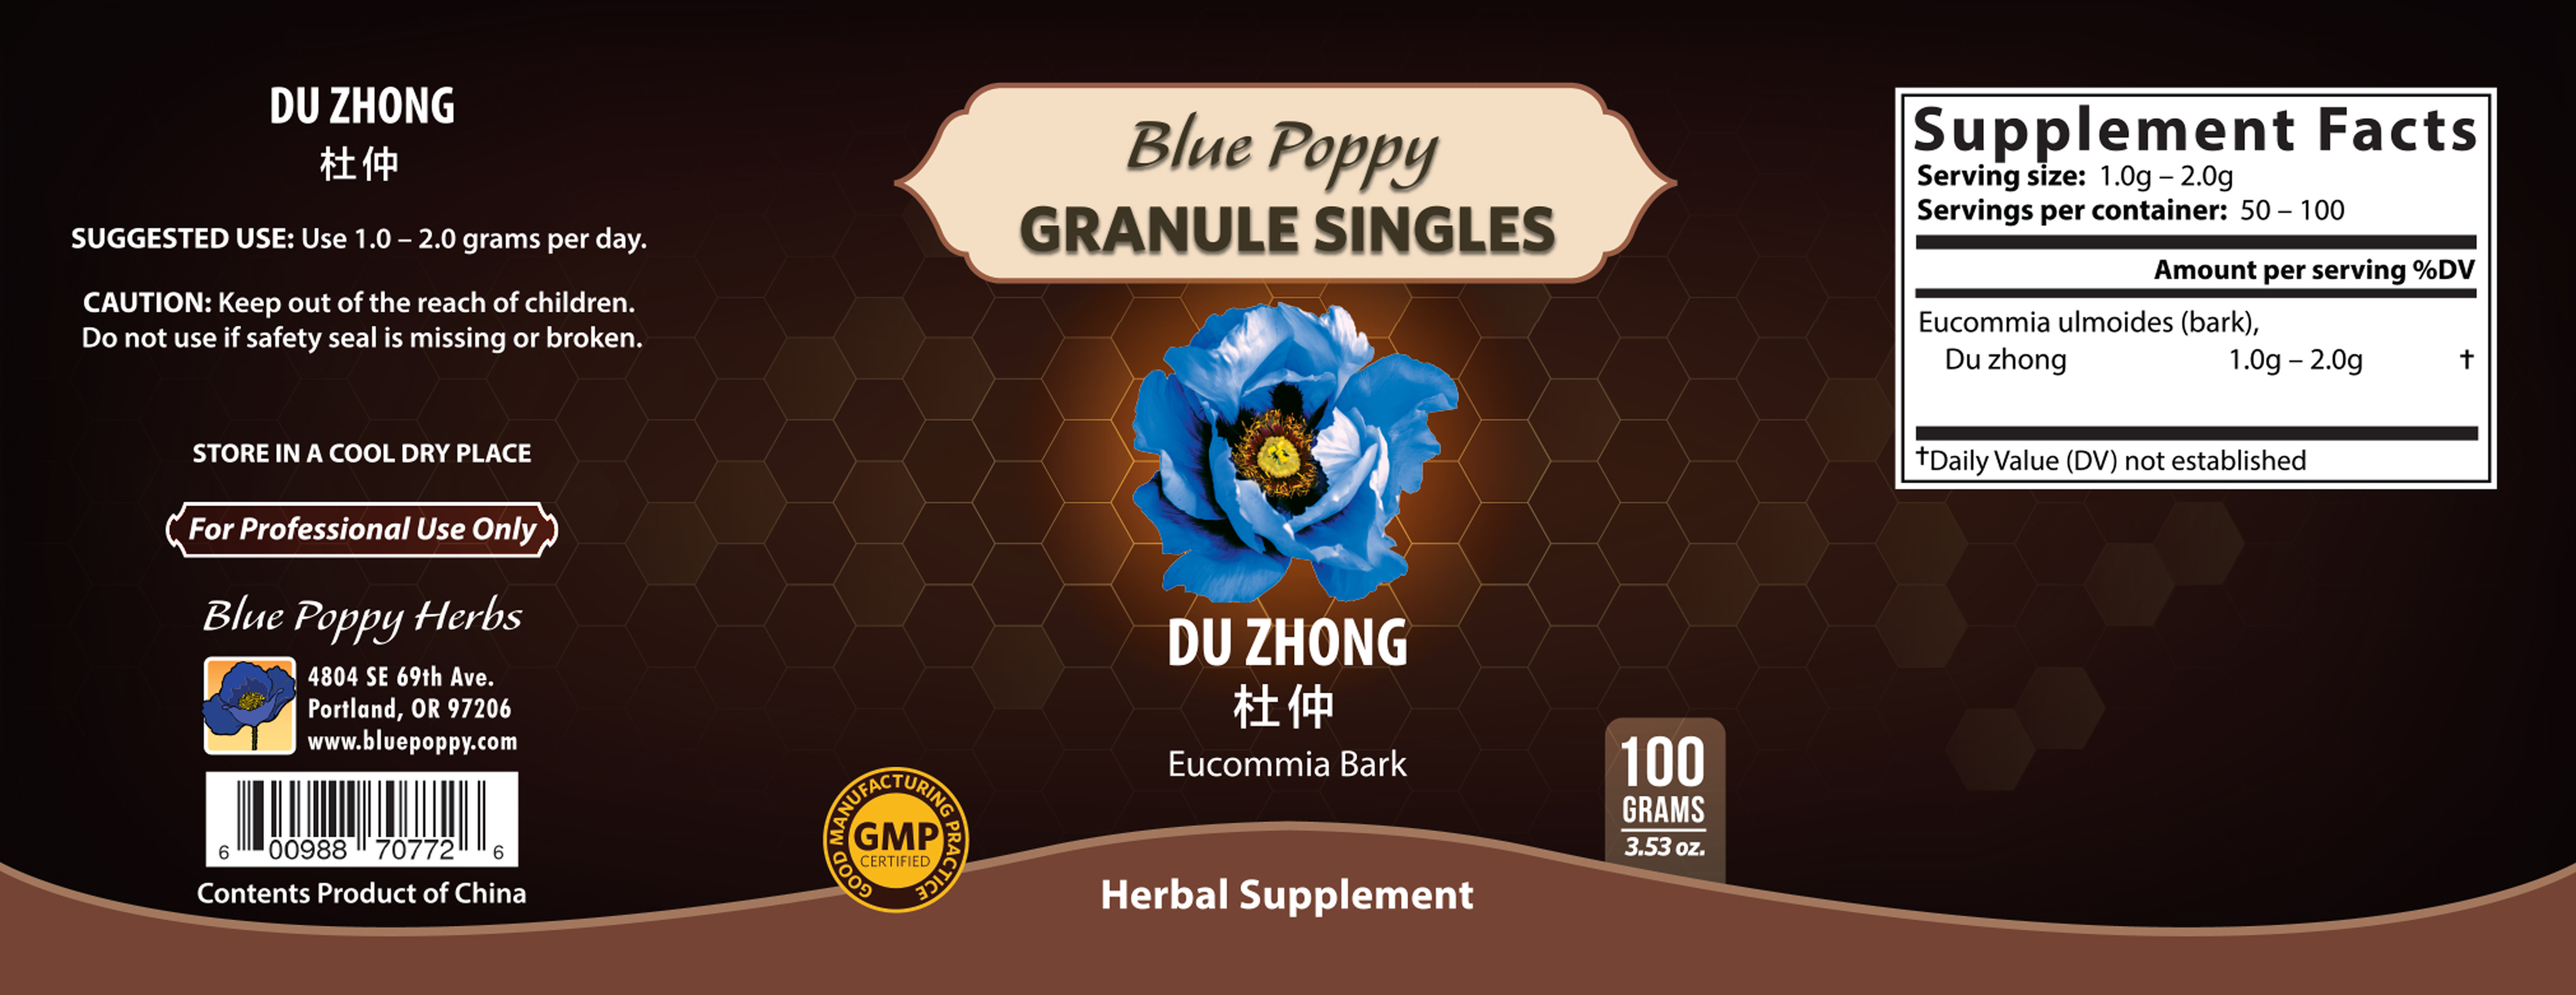 Du Zhong Granules